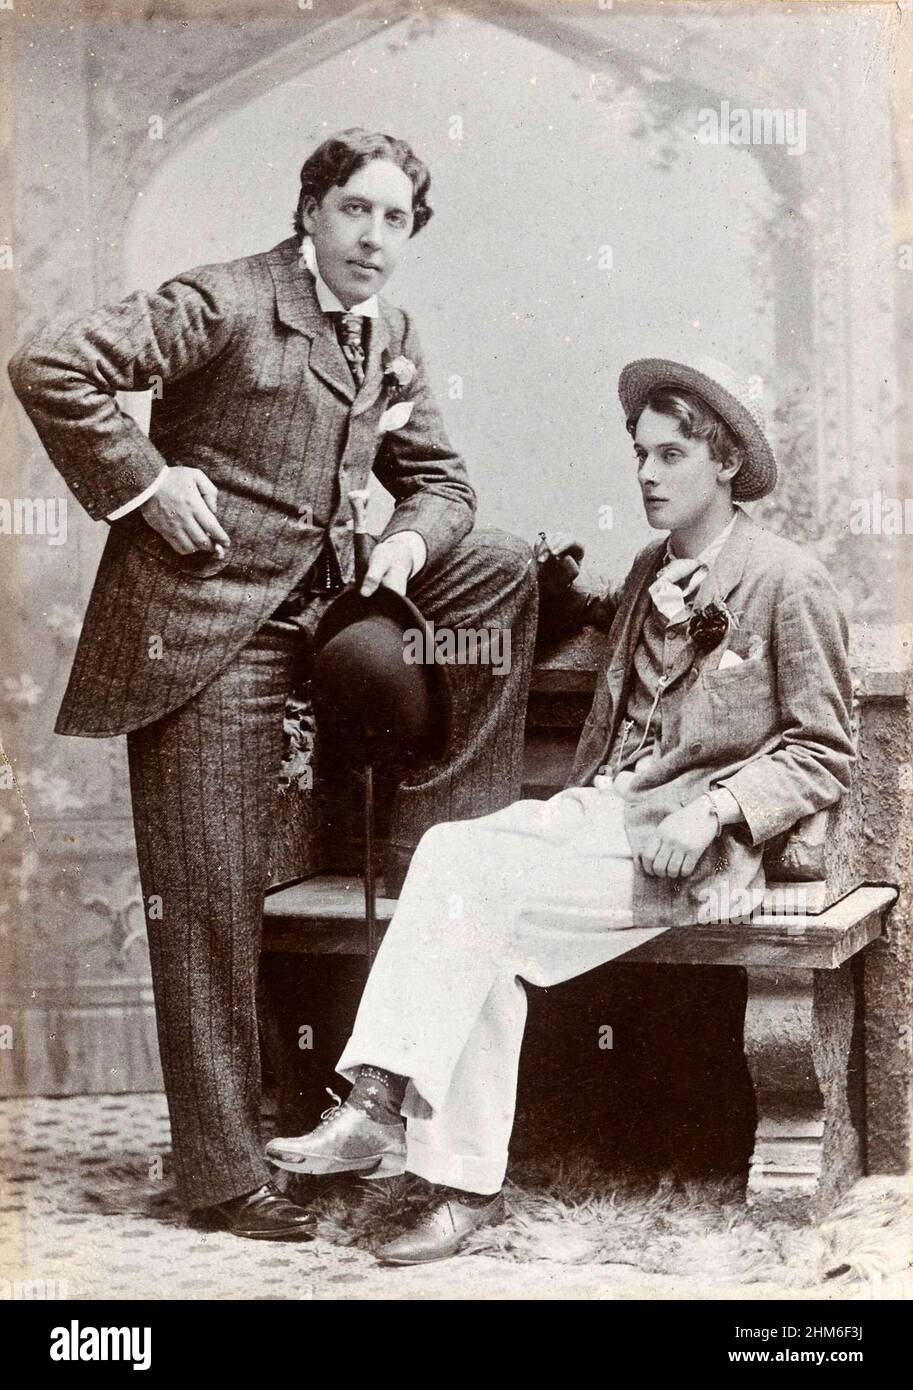 Un ritratto della scrittura irlandese, poeta e drammaturgo Oscar Wilde con il suo amante Lord Alfred Douglas. Foto del 1893 quando Wilde aveva 39 anni. Foto Stock